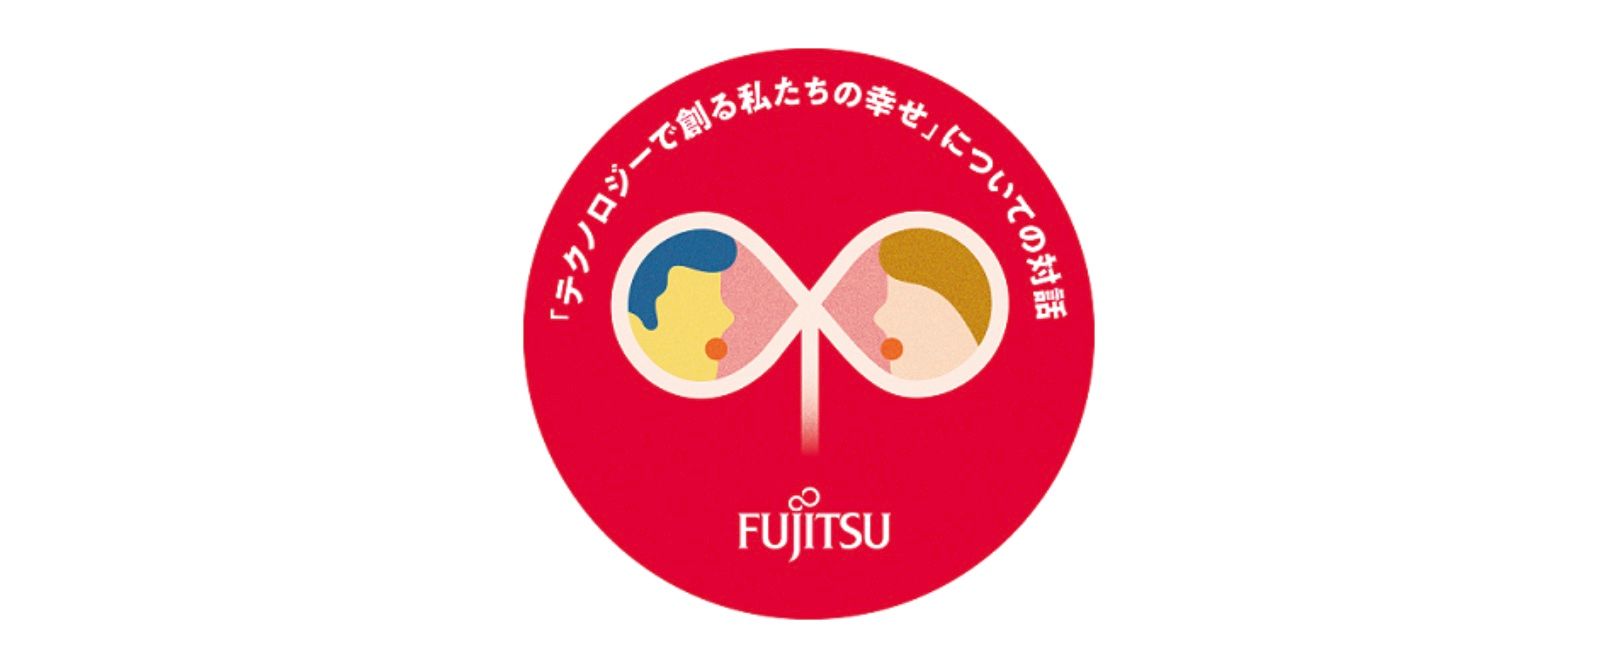 Fujitsu는 일본의 사회적 복지를 증진하기 위해 미래 세대의 목소리를 듣는 활동에 참여합니다.